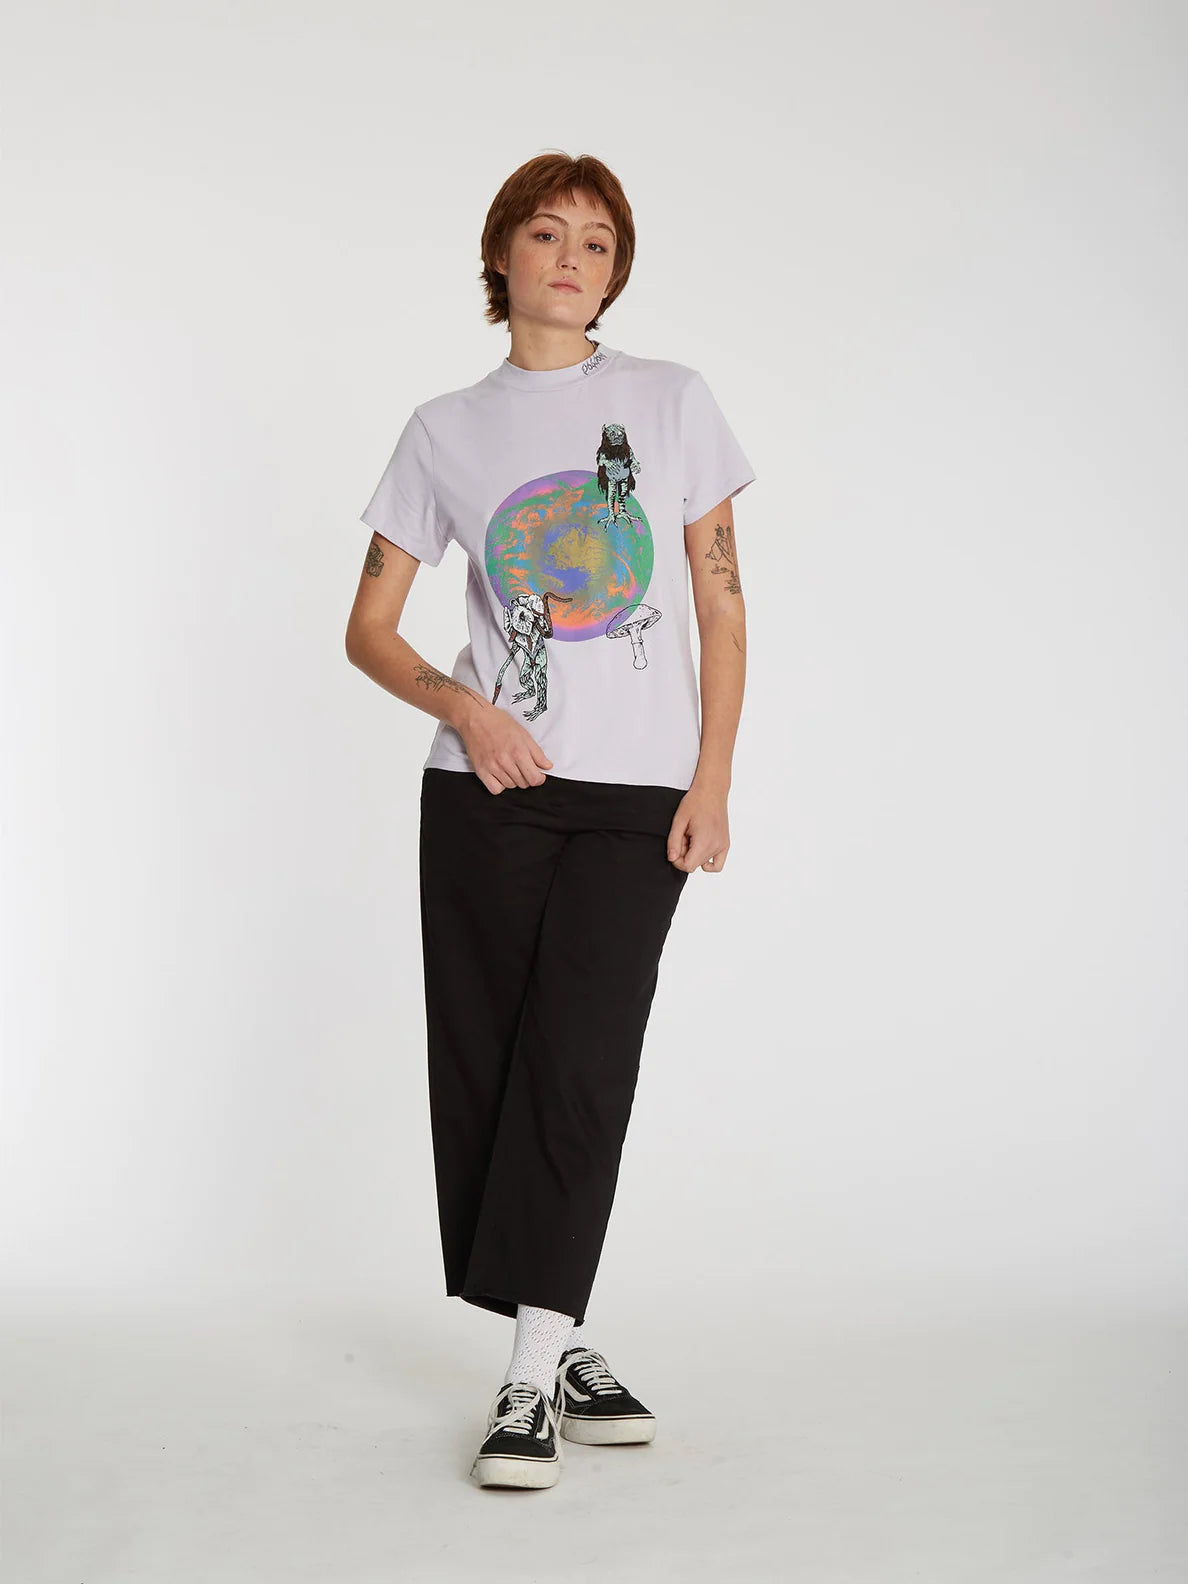 Volcom Chrissie Abbott x French Lavender Girl T-Shirt | Meistverkaufte Produkte | Neue Produkte | Neueste Produkte | surfdevils.com